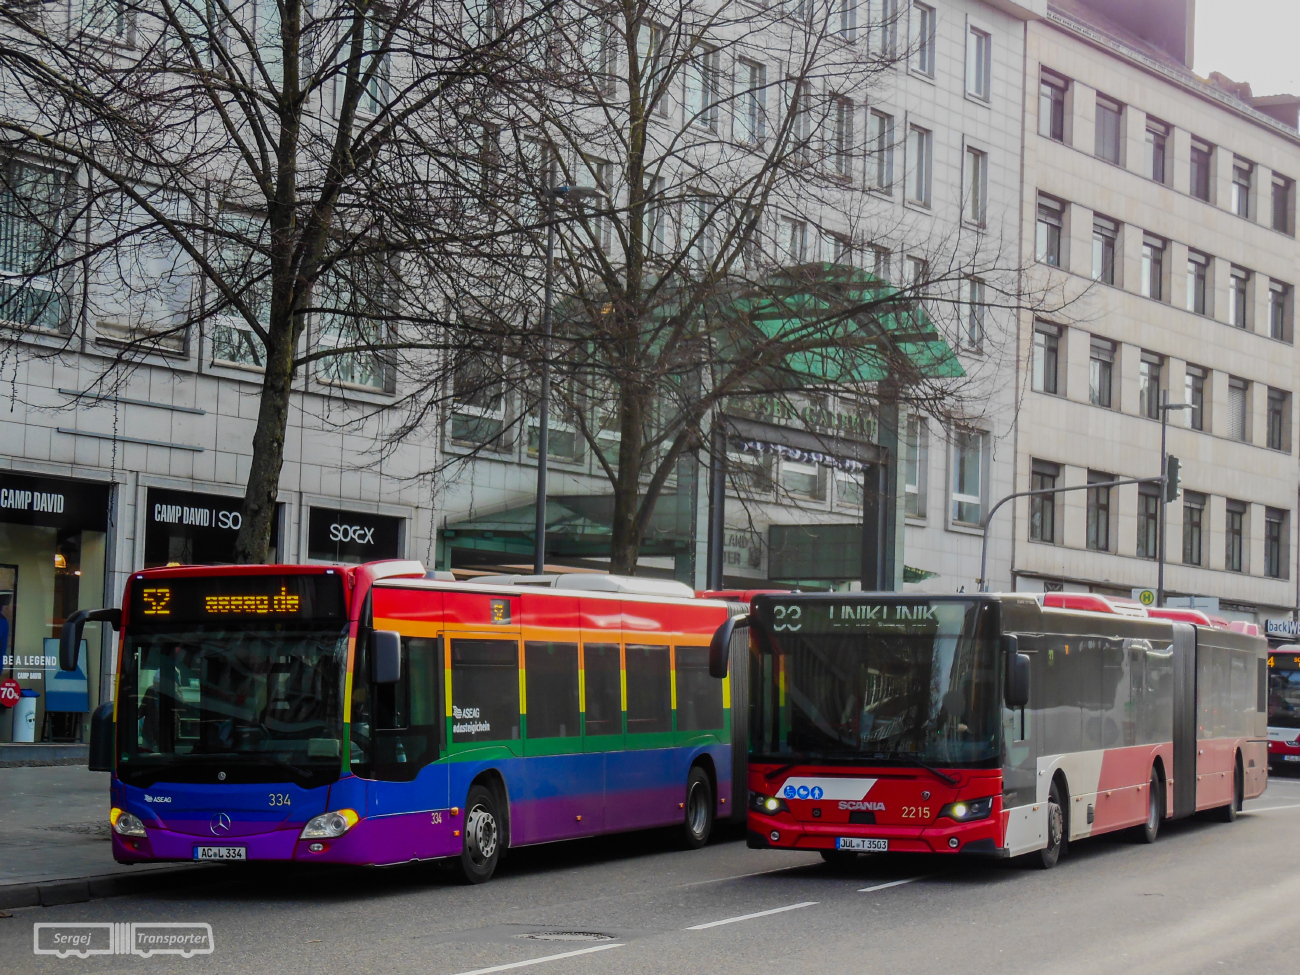 Aachen, Mercedes-Benz Citaro C2 G №: 334; Düren, Scania Citywide LFA II 18M №: 2215